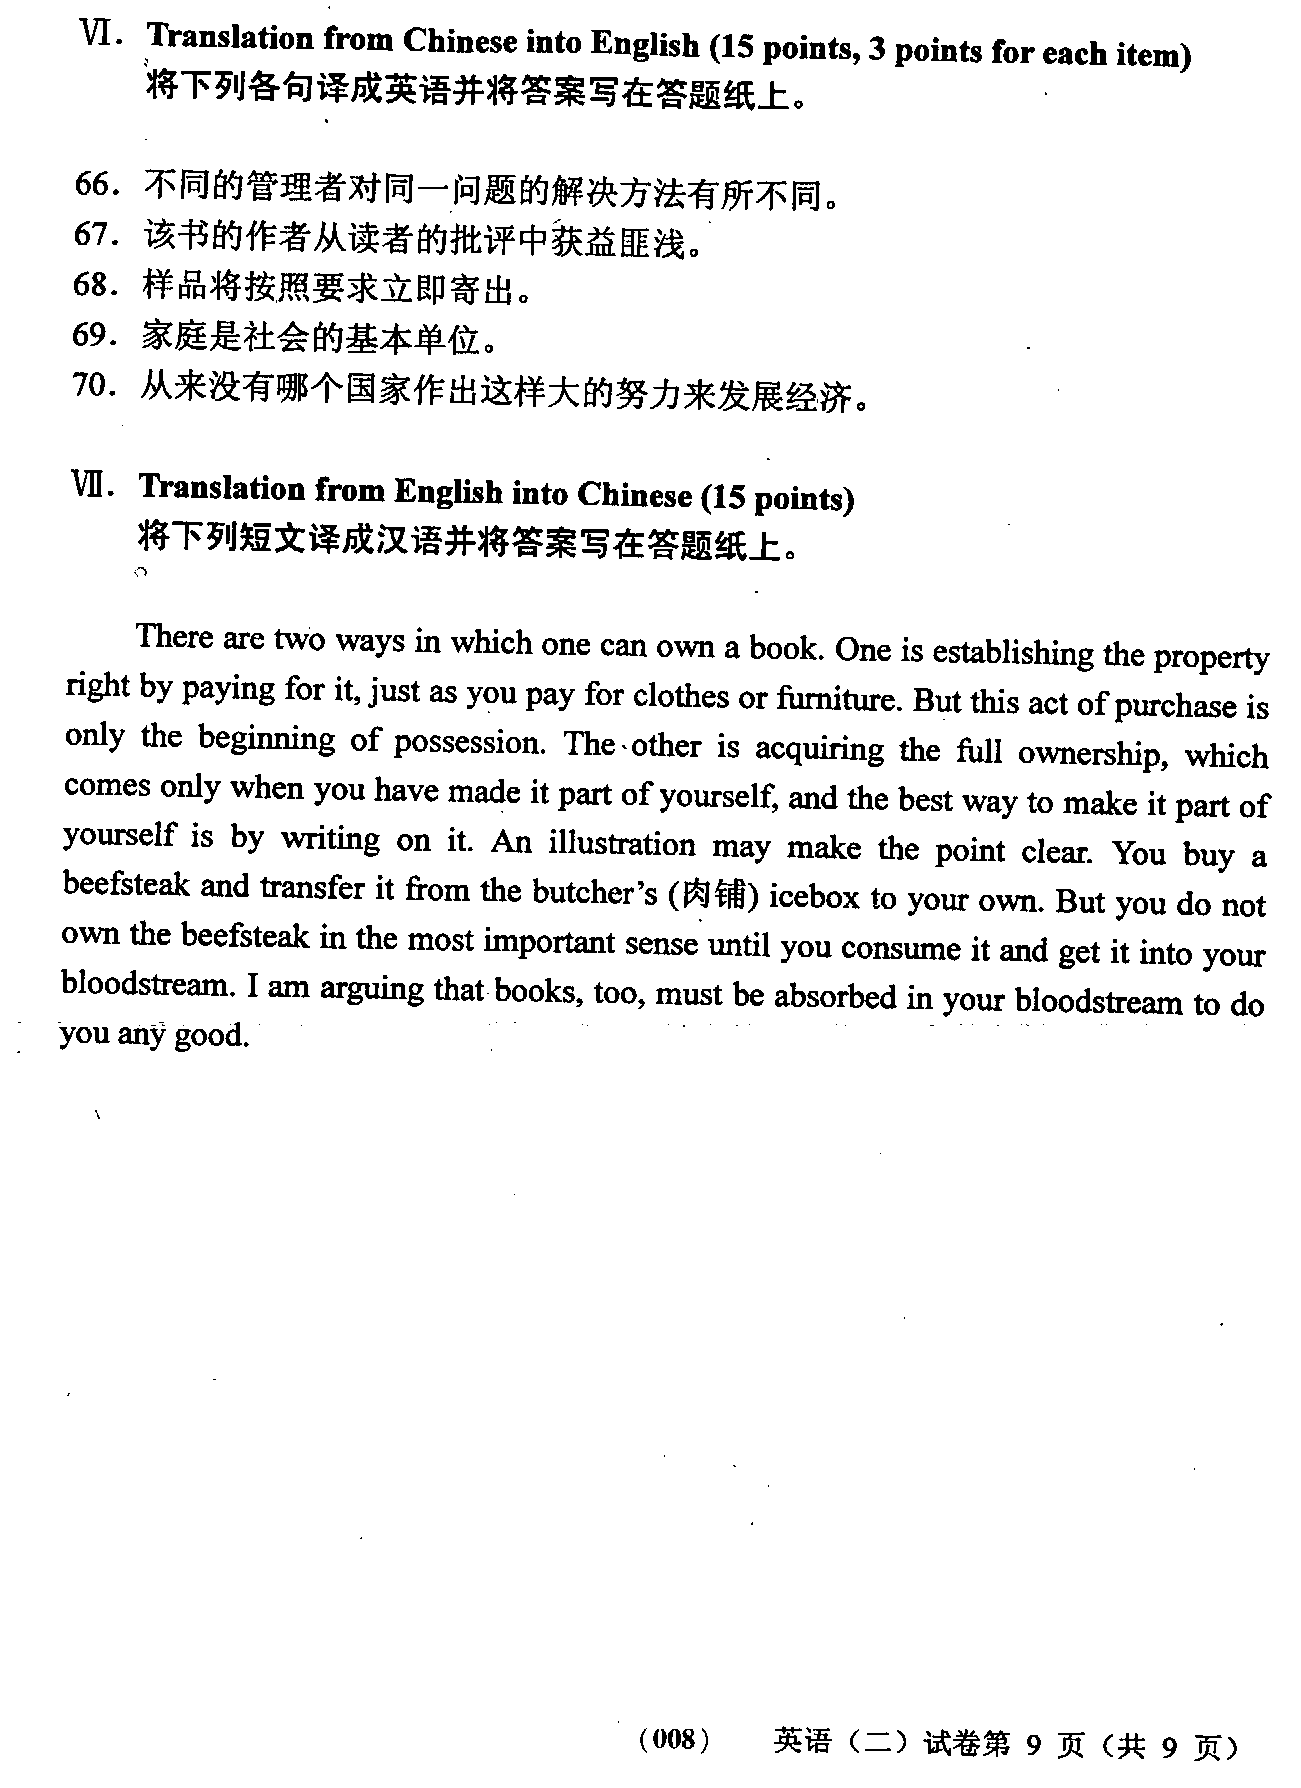 2008年01月贵州省自学考试00015英语二